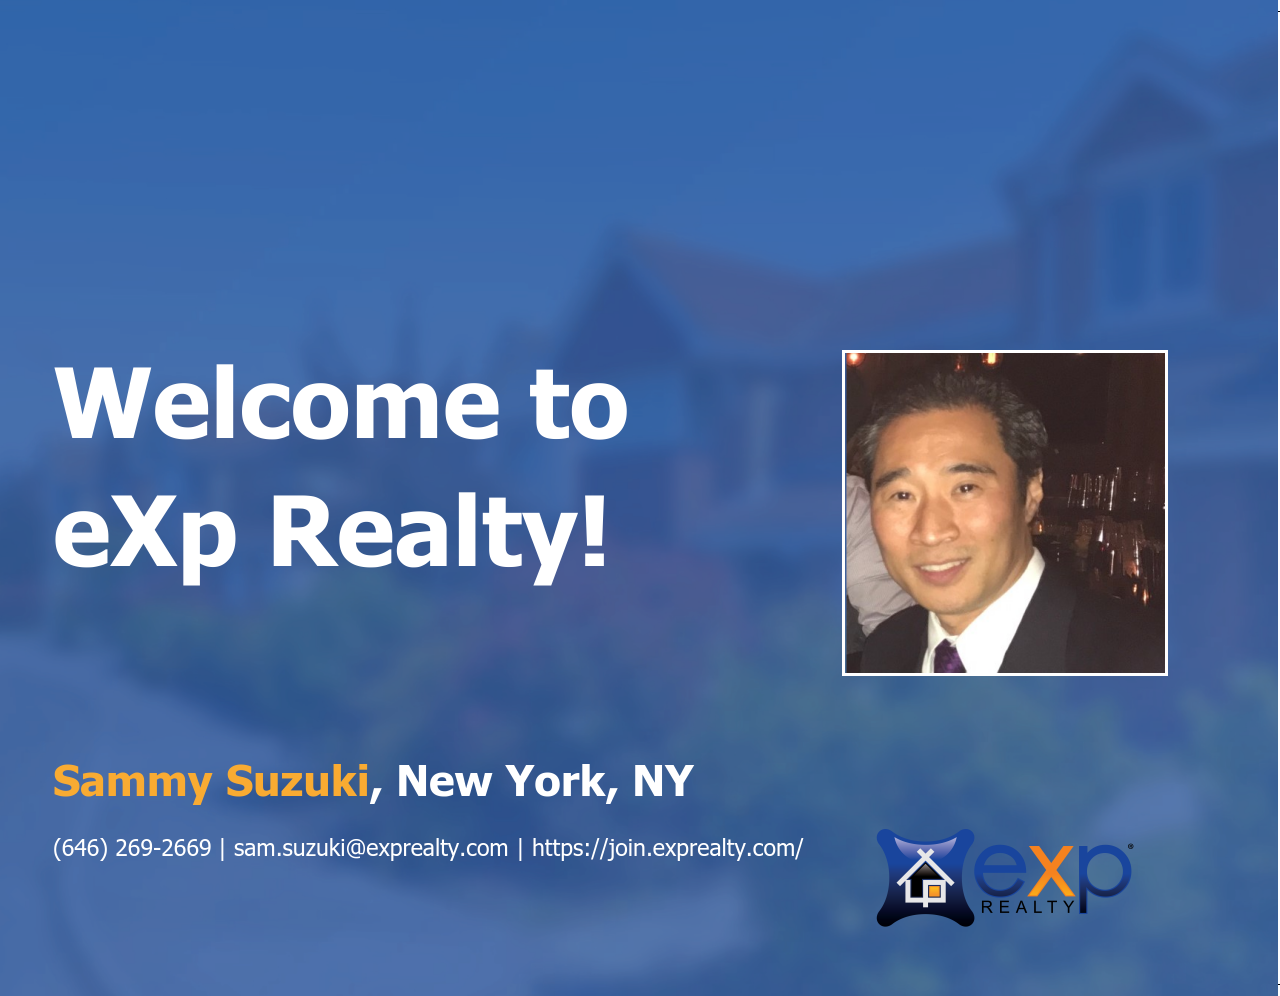 eXp Realty Welcomes Sammy Suzuki!